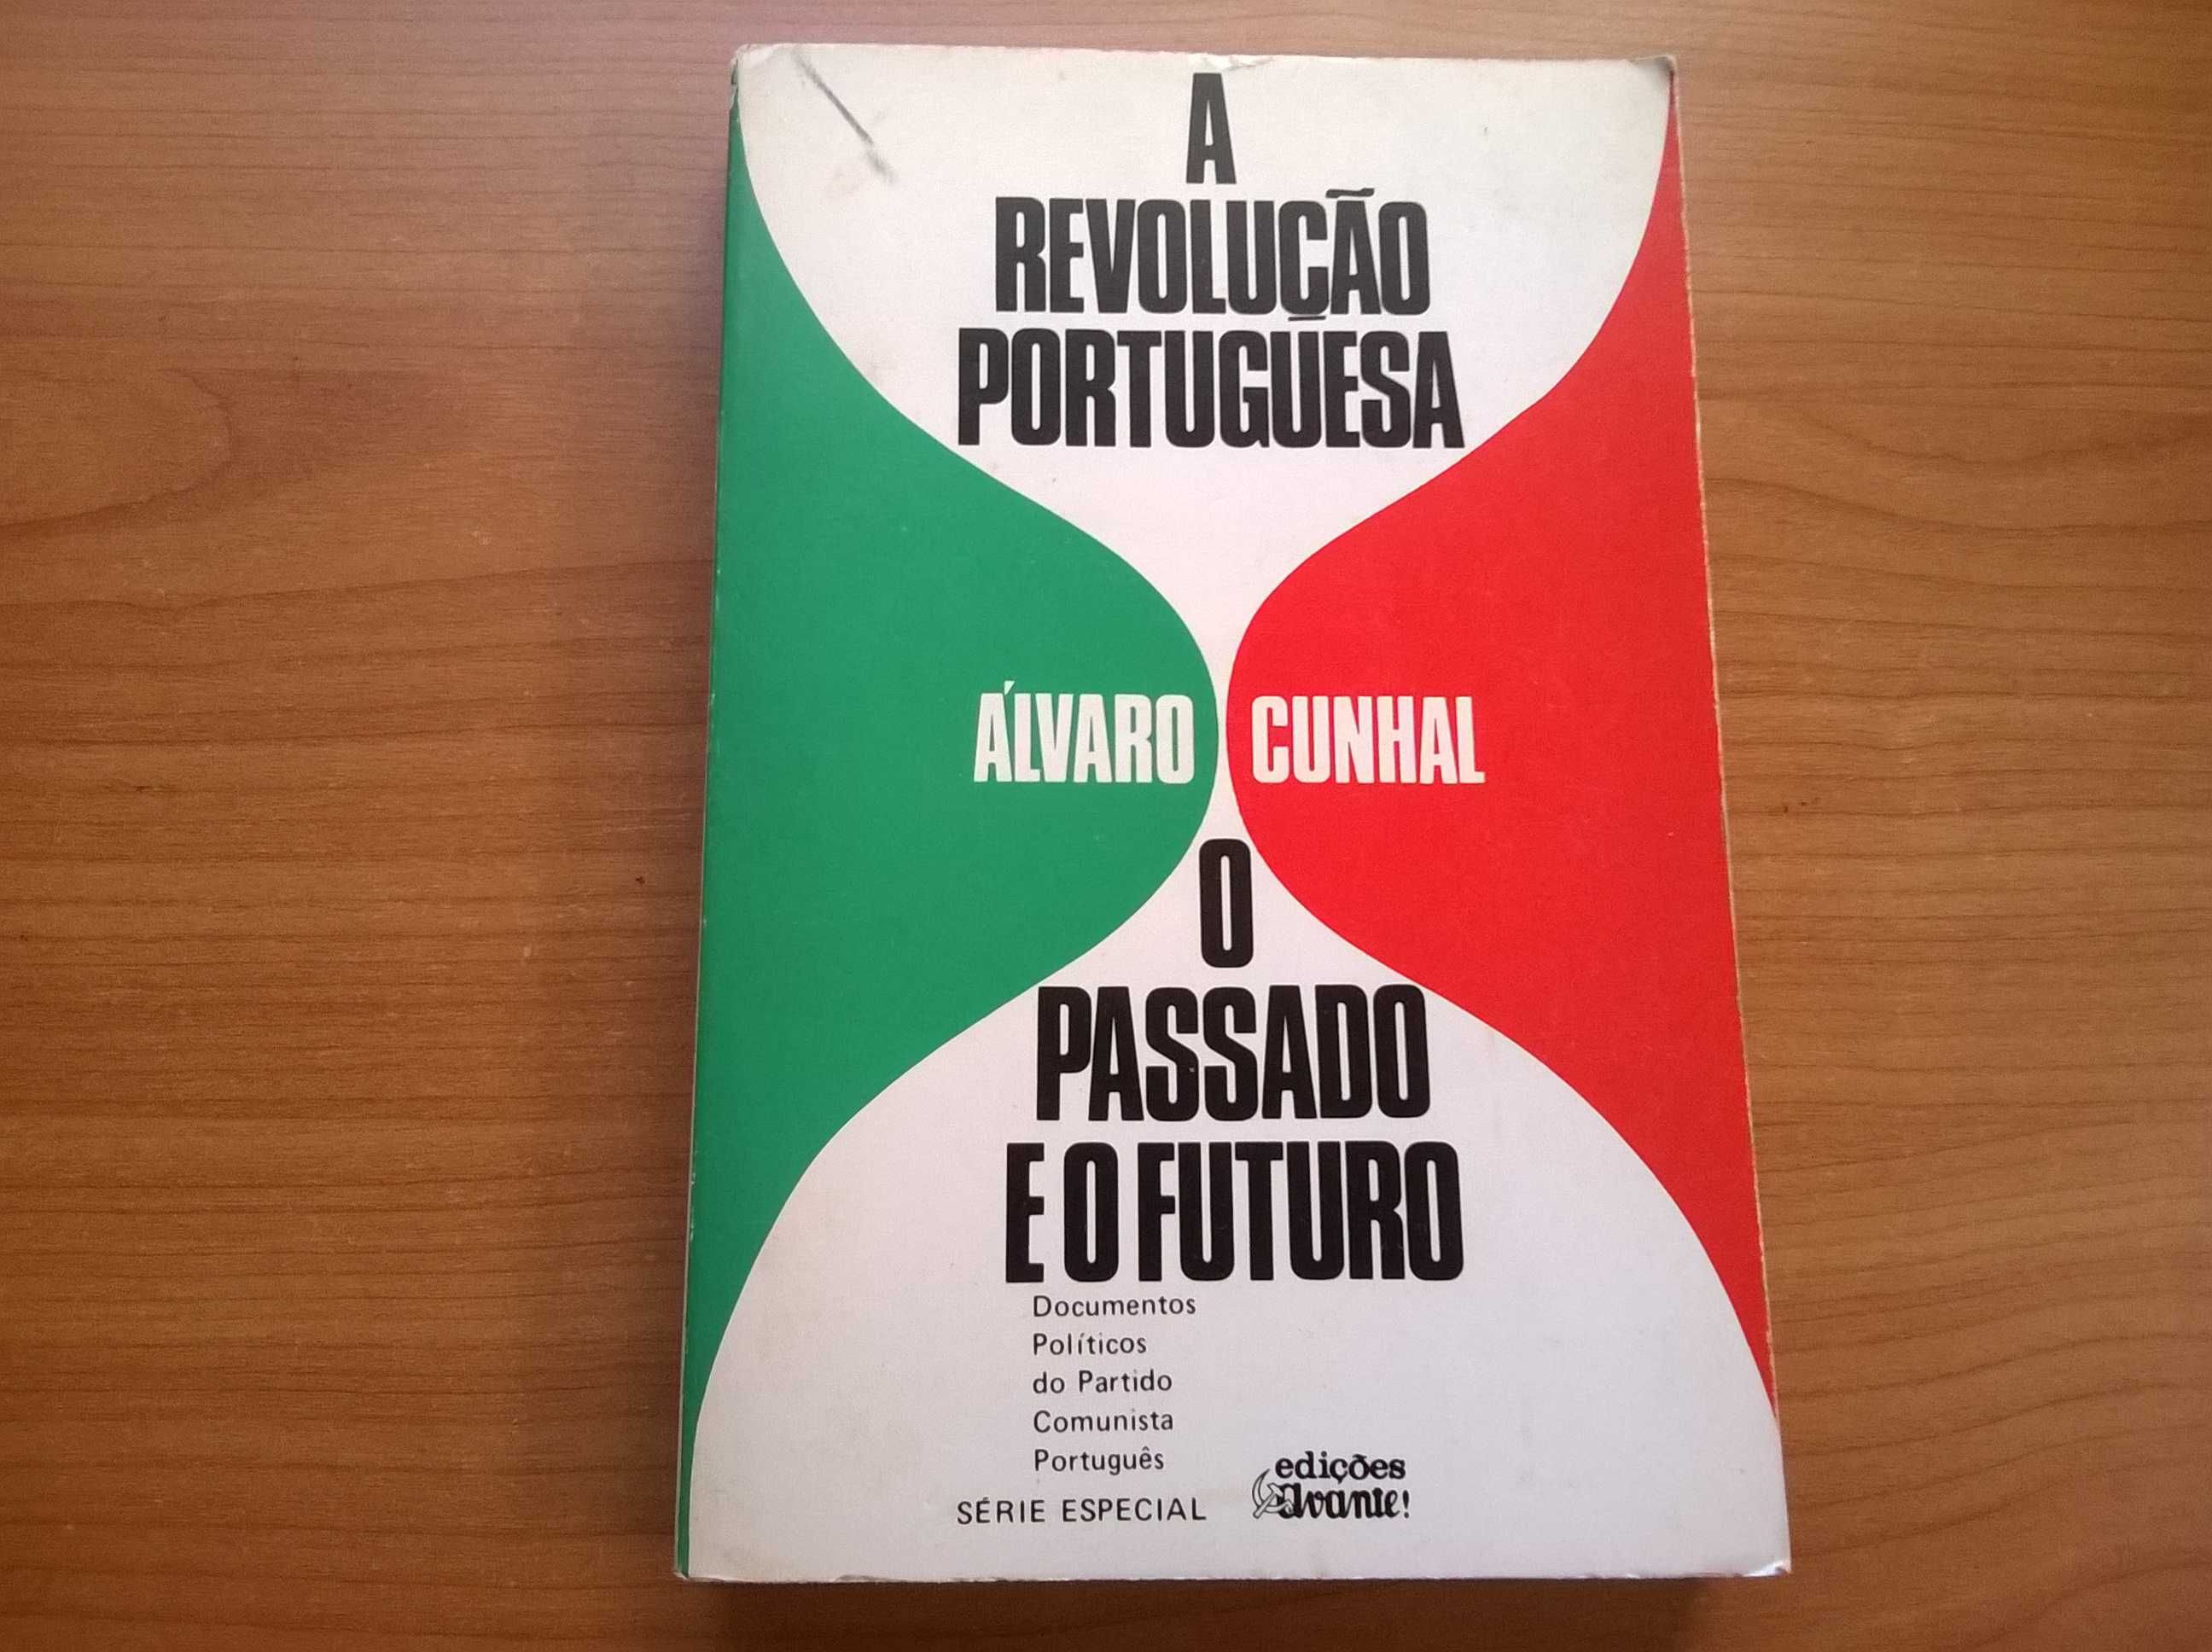 A Revolução Portuguesa, O Passado e o Futuro - Álvaro Cunhal